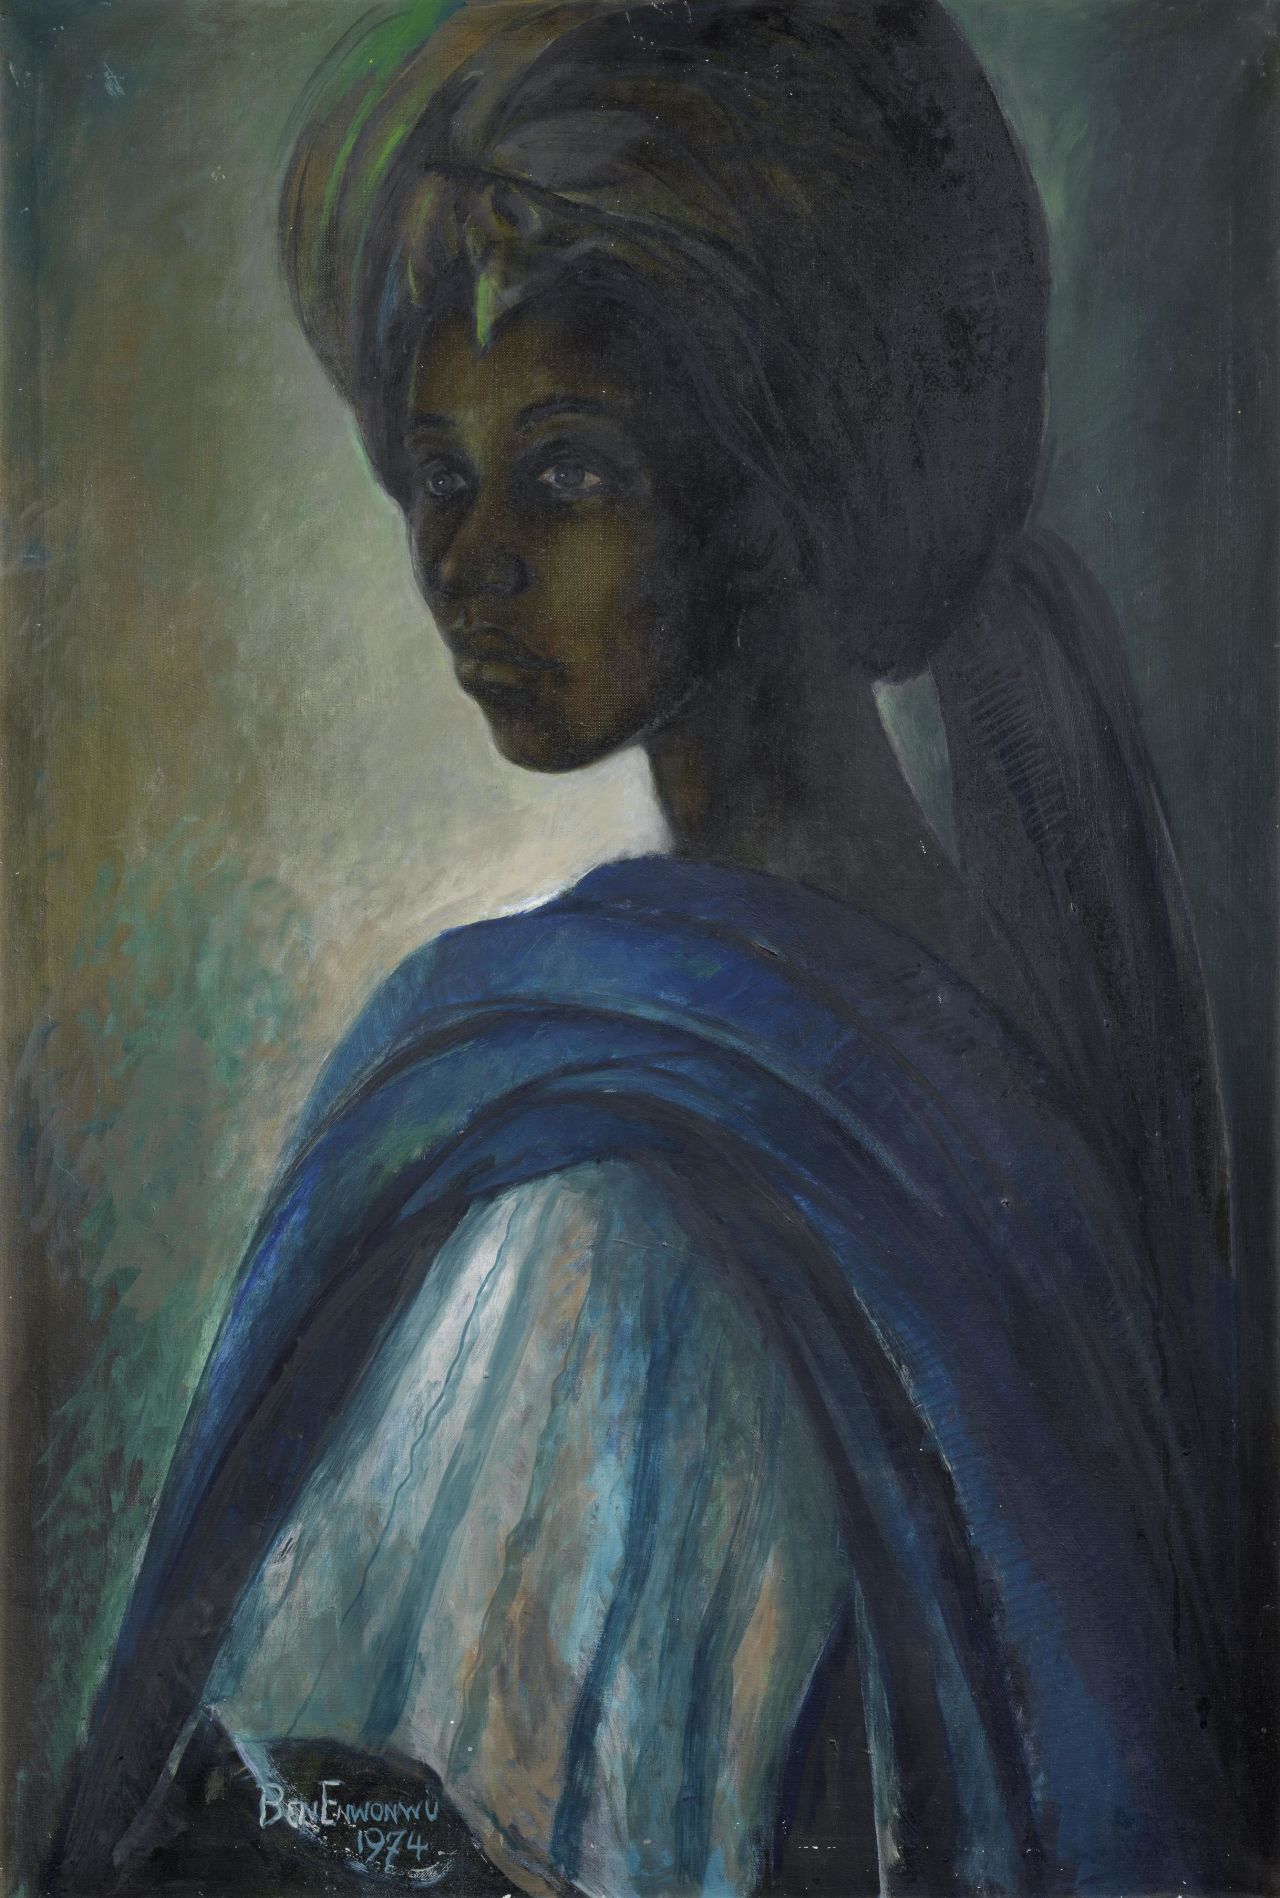 The Tutu is one of three missing paintings by Nigerian artist Ben Enwonwu 